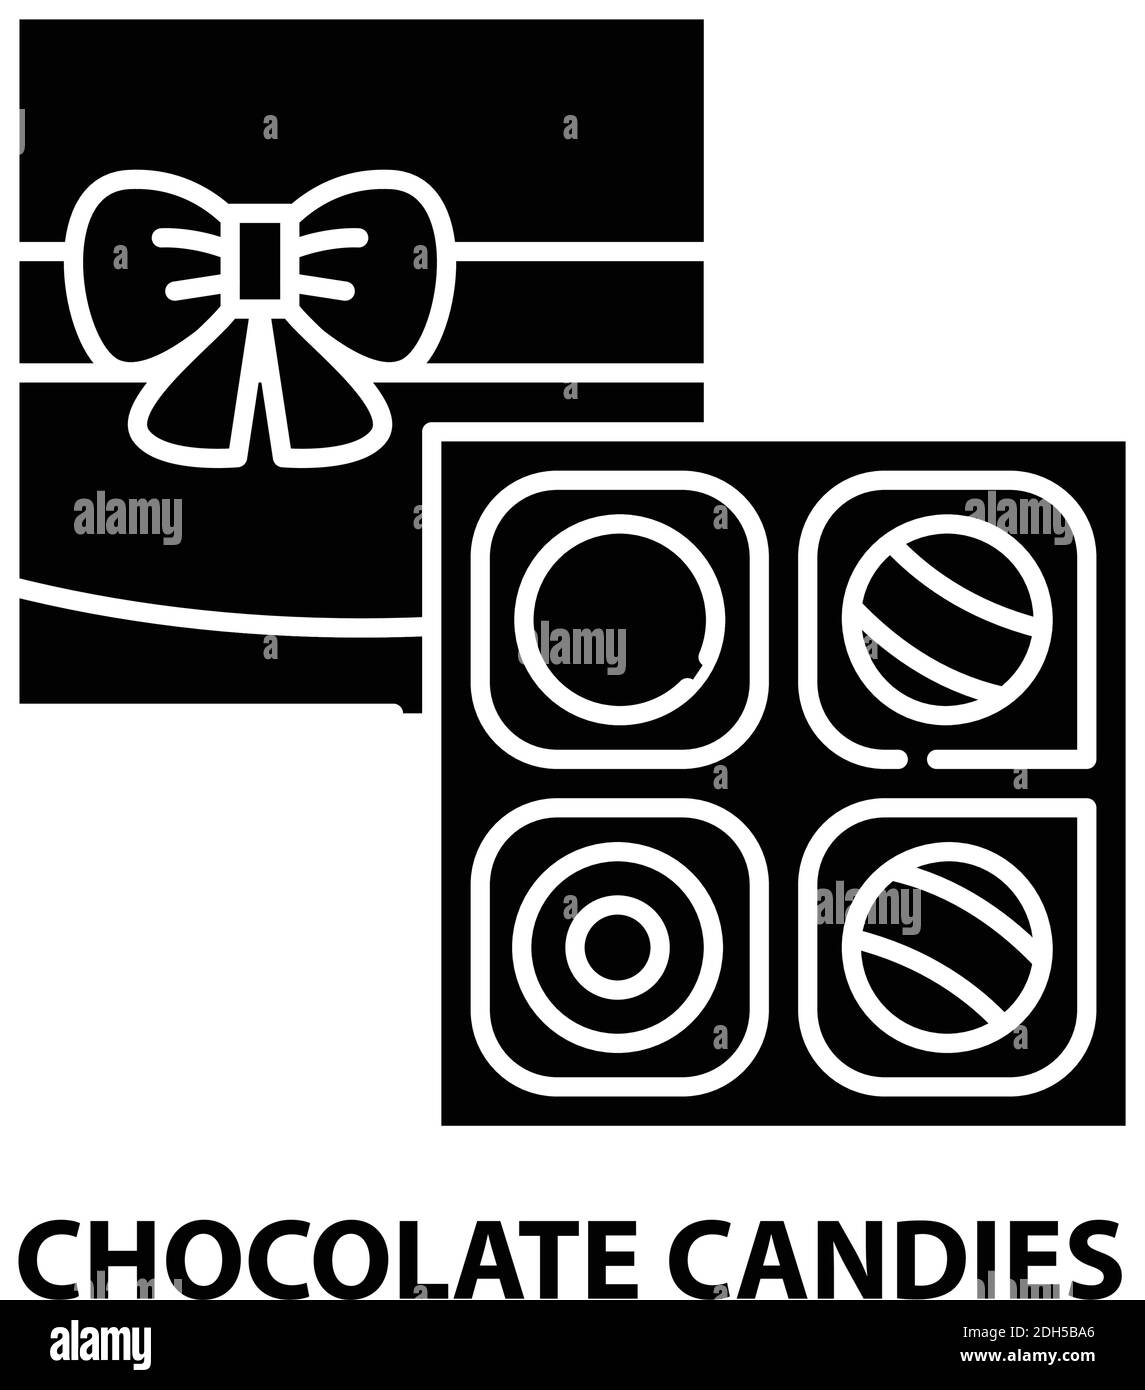 icona caramelle al cioccolato, segno vettoriale nero con tratti modificabili, illustrazione concettuale Illustrazione Vettoriale